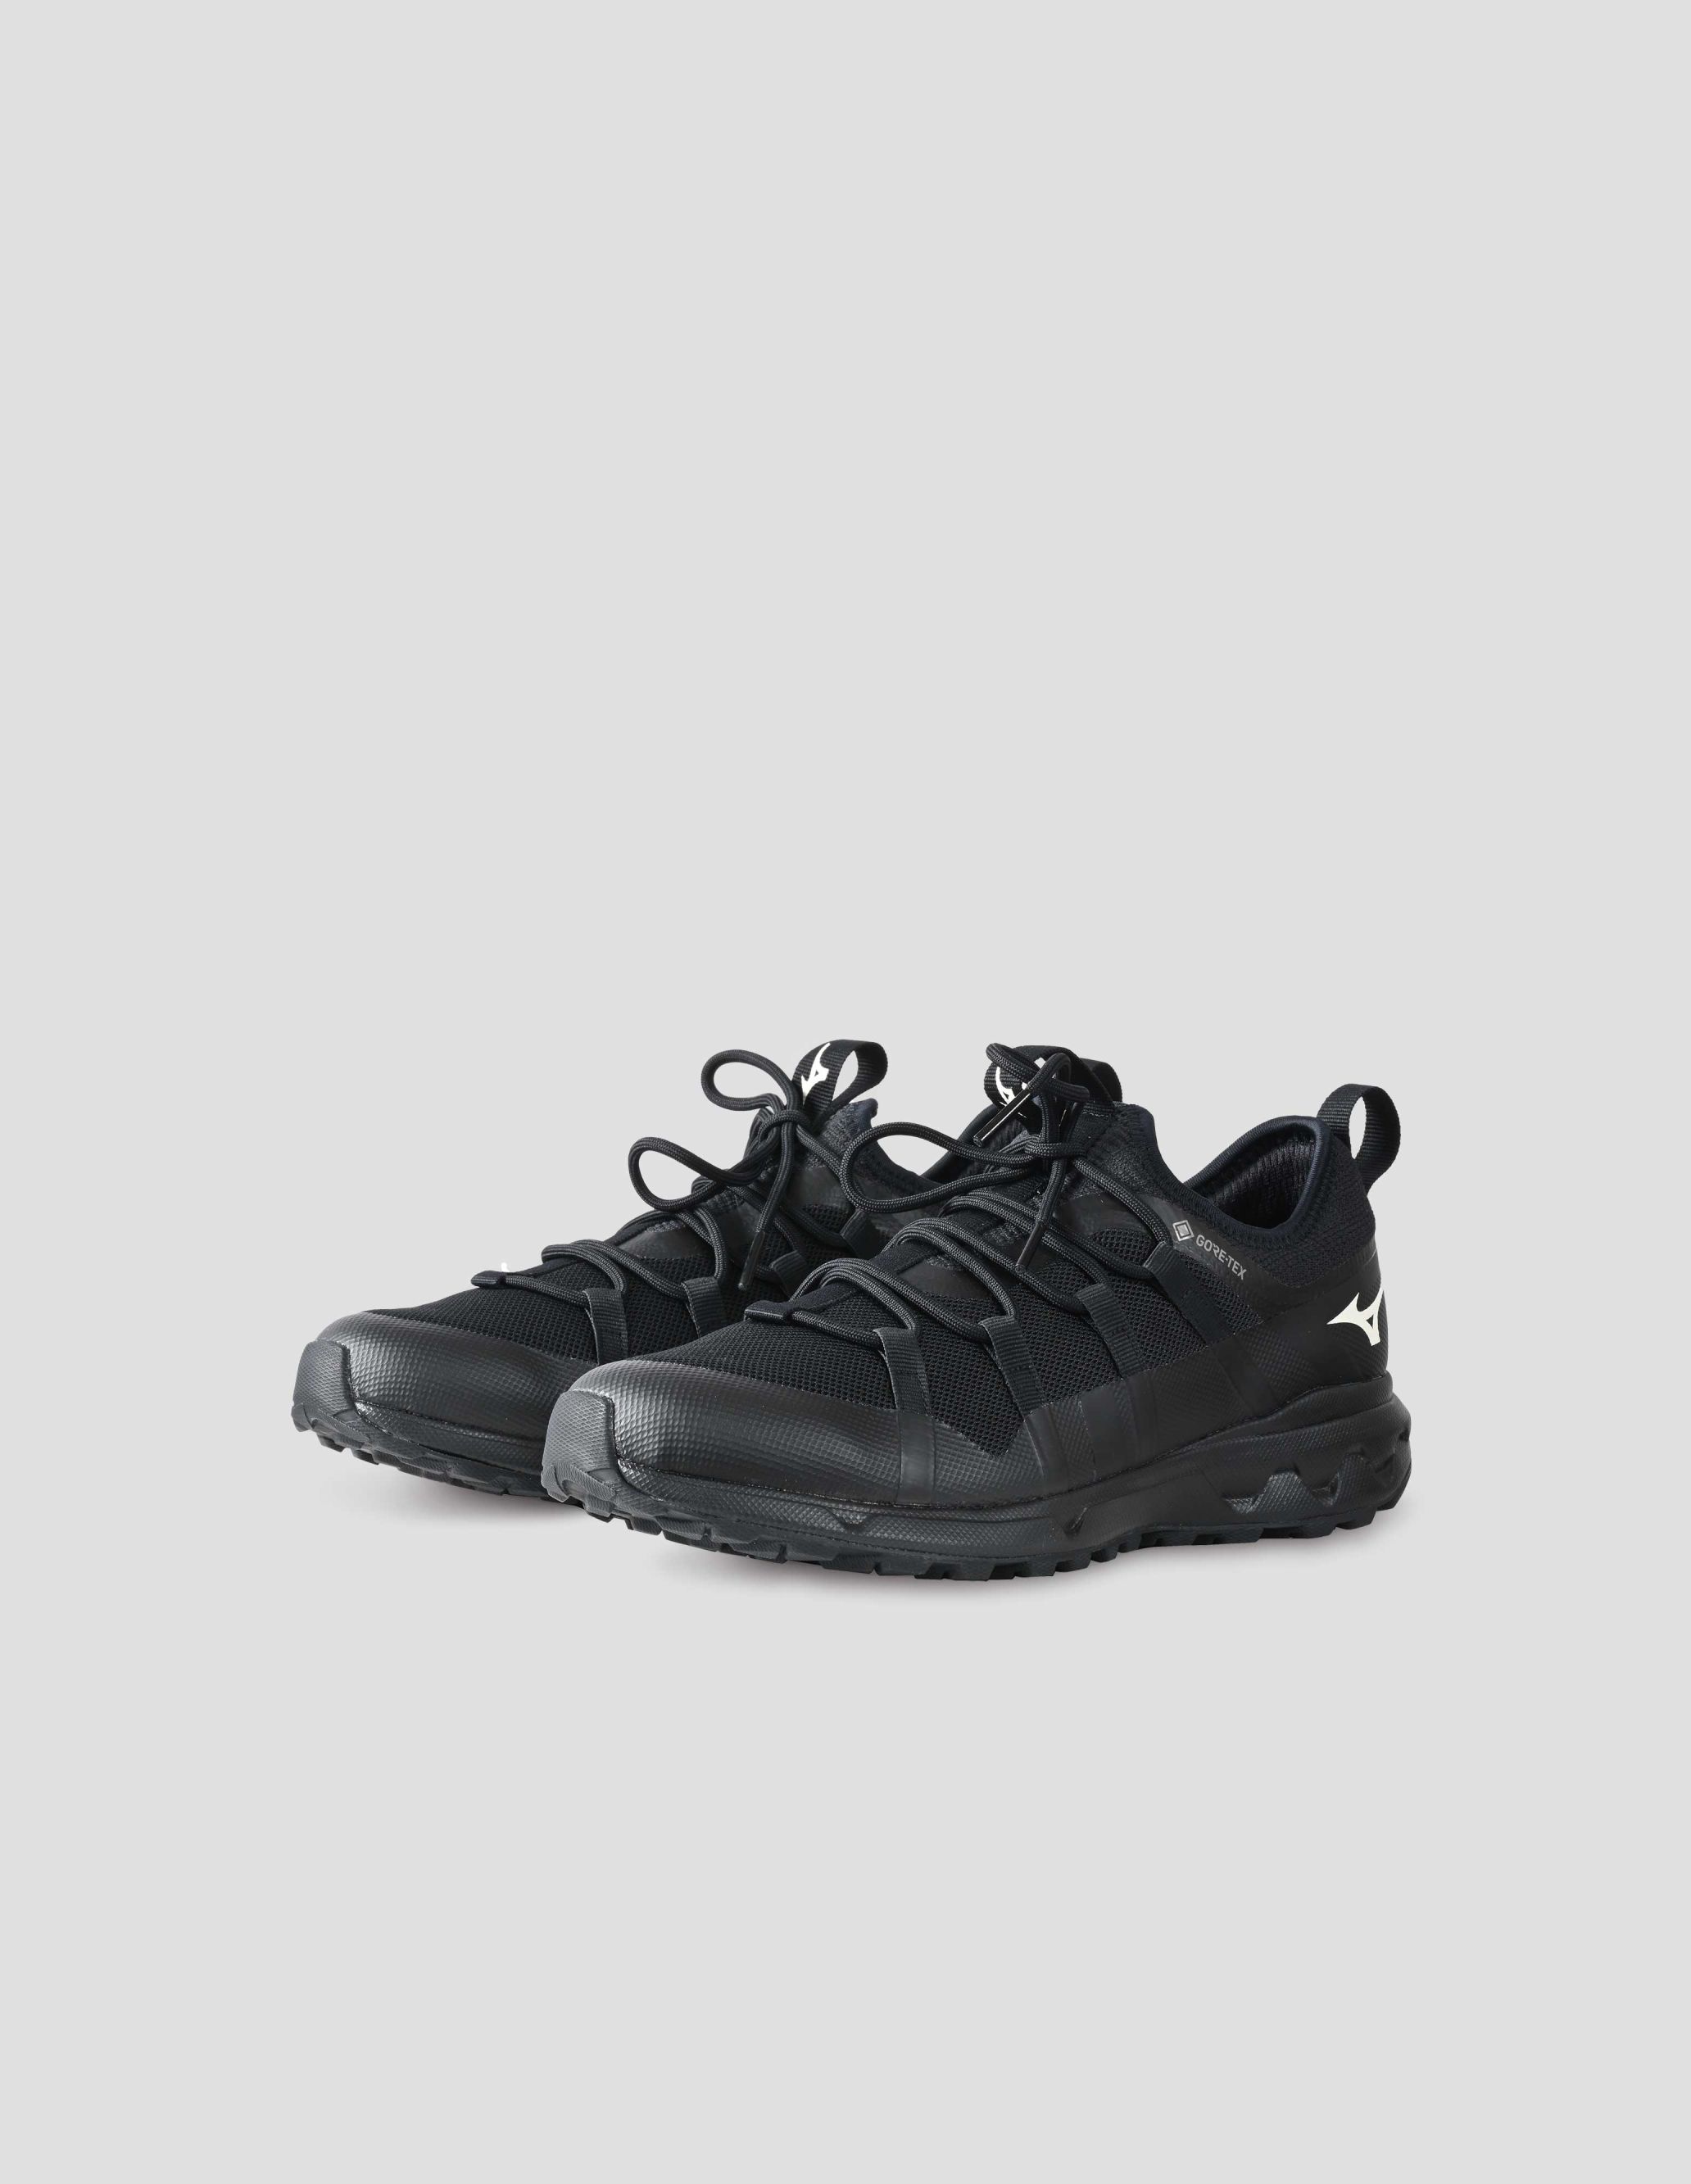 【新品品質保証】MARGARET HOWELL MIZUNO WALKING SHOE 靴